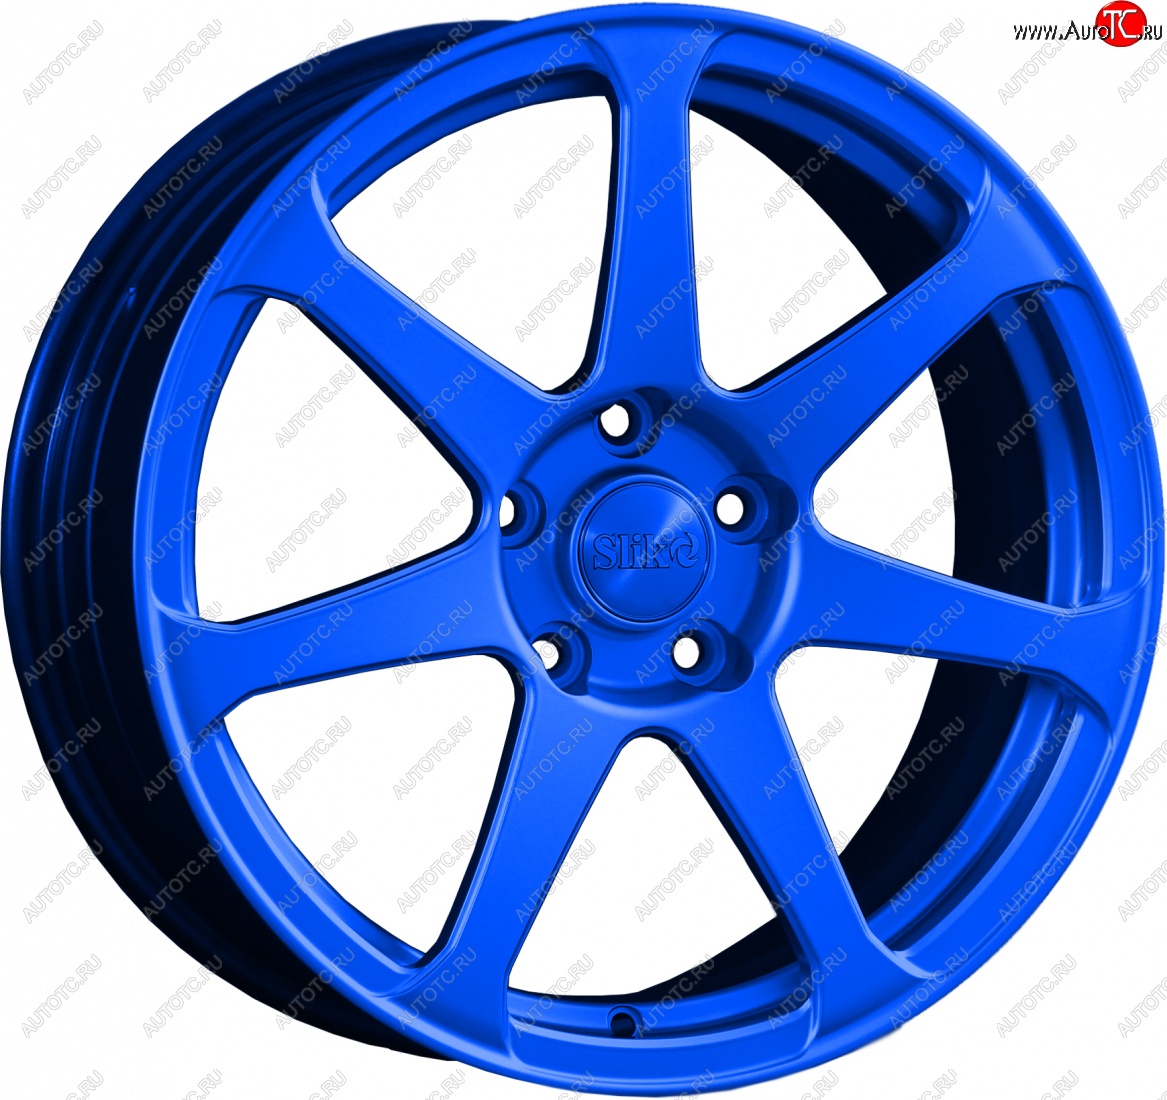 14 499 р. Кованый диск Slik classik R17x7.5 Candy BLUE синий 7.5x17 Chevrolet Lanos T100 седан (2002-2017) 4x100.0xDIA56.6xET49.0 (Цвет: Candy BLUE синий 7.5x17)